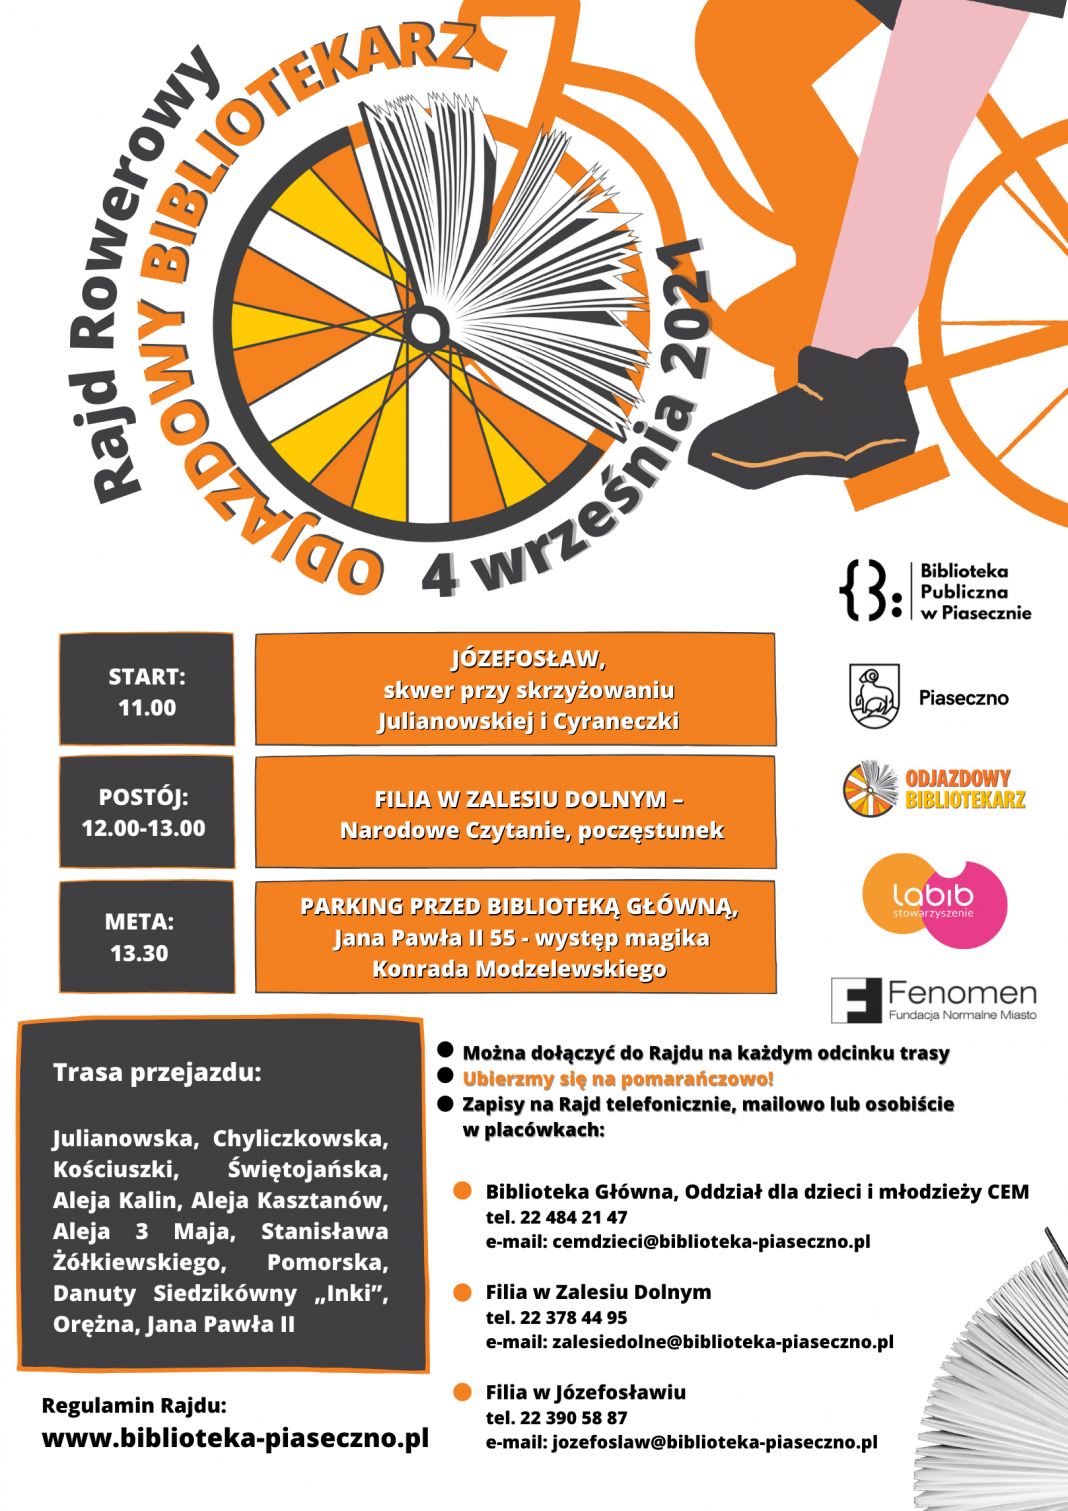 Plakat wydarzenia Odjazdowy Bibliotekarz 2021 - zwiedzamy gminę Piaseczno na rowerze!